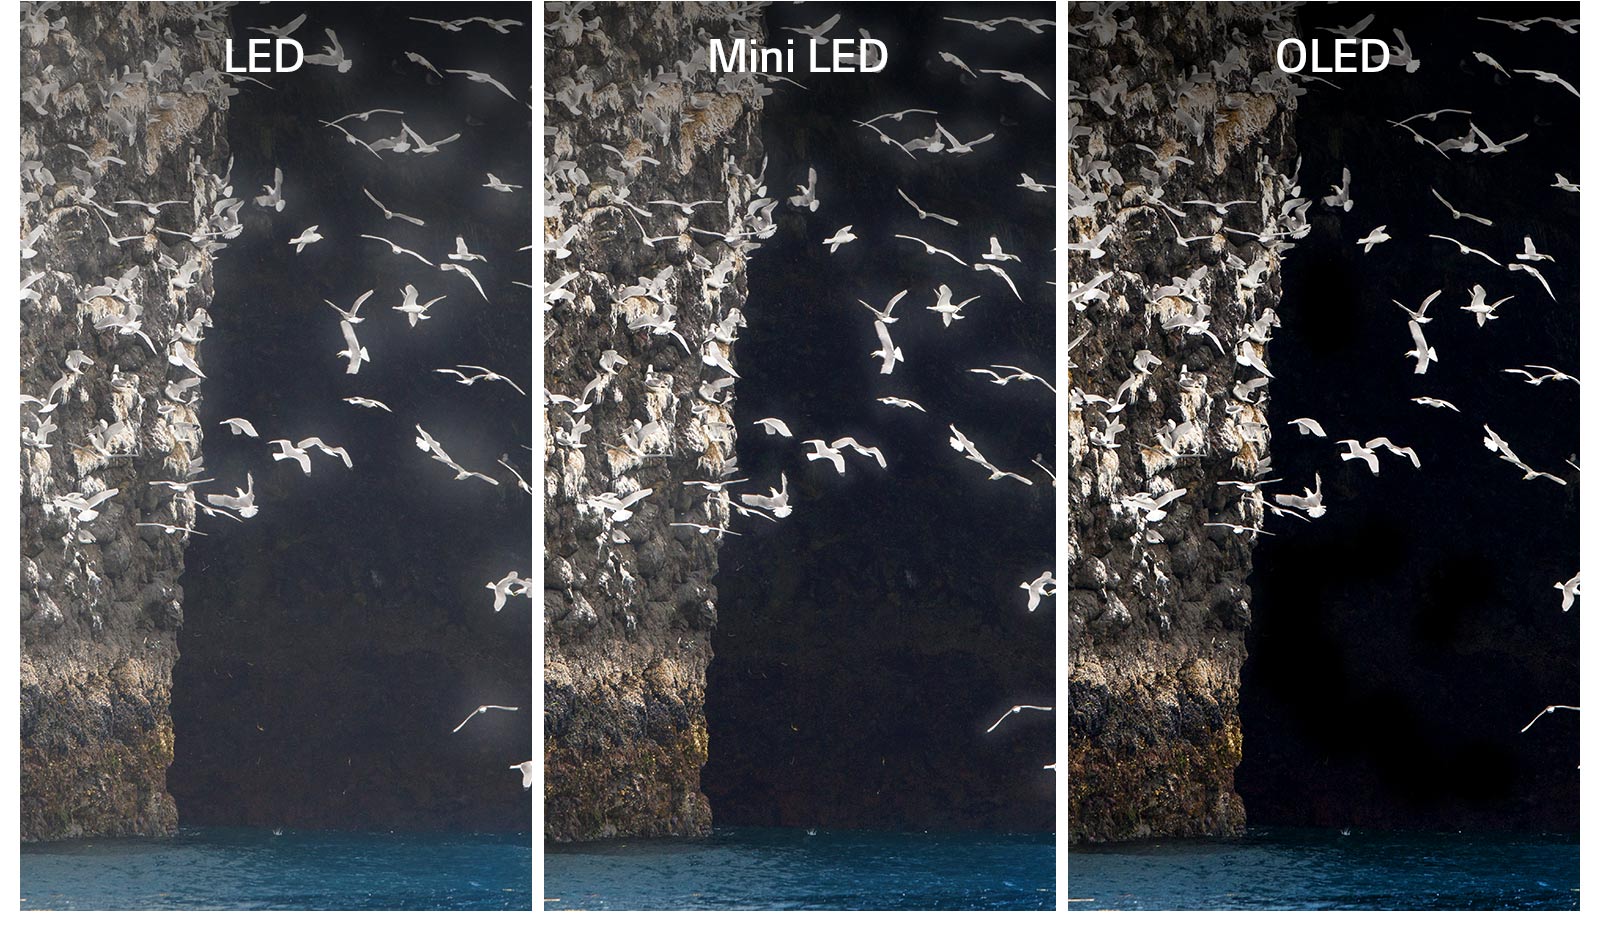 Hình ảnh so sánh giữa màn LED, Mini LED và OLED khi hiển thị cùng một hình ảnh, một chú chim đang vỗ cánh trên mặt hồ. Màn hình LED và Mini LED xuất hiện quầng sáng quanh cánh chim khiến hình ảnh không được rõ. Màn OLED với màu đen hoàn hảo hiển thị rõ đôi cánh.